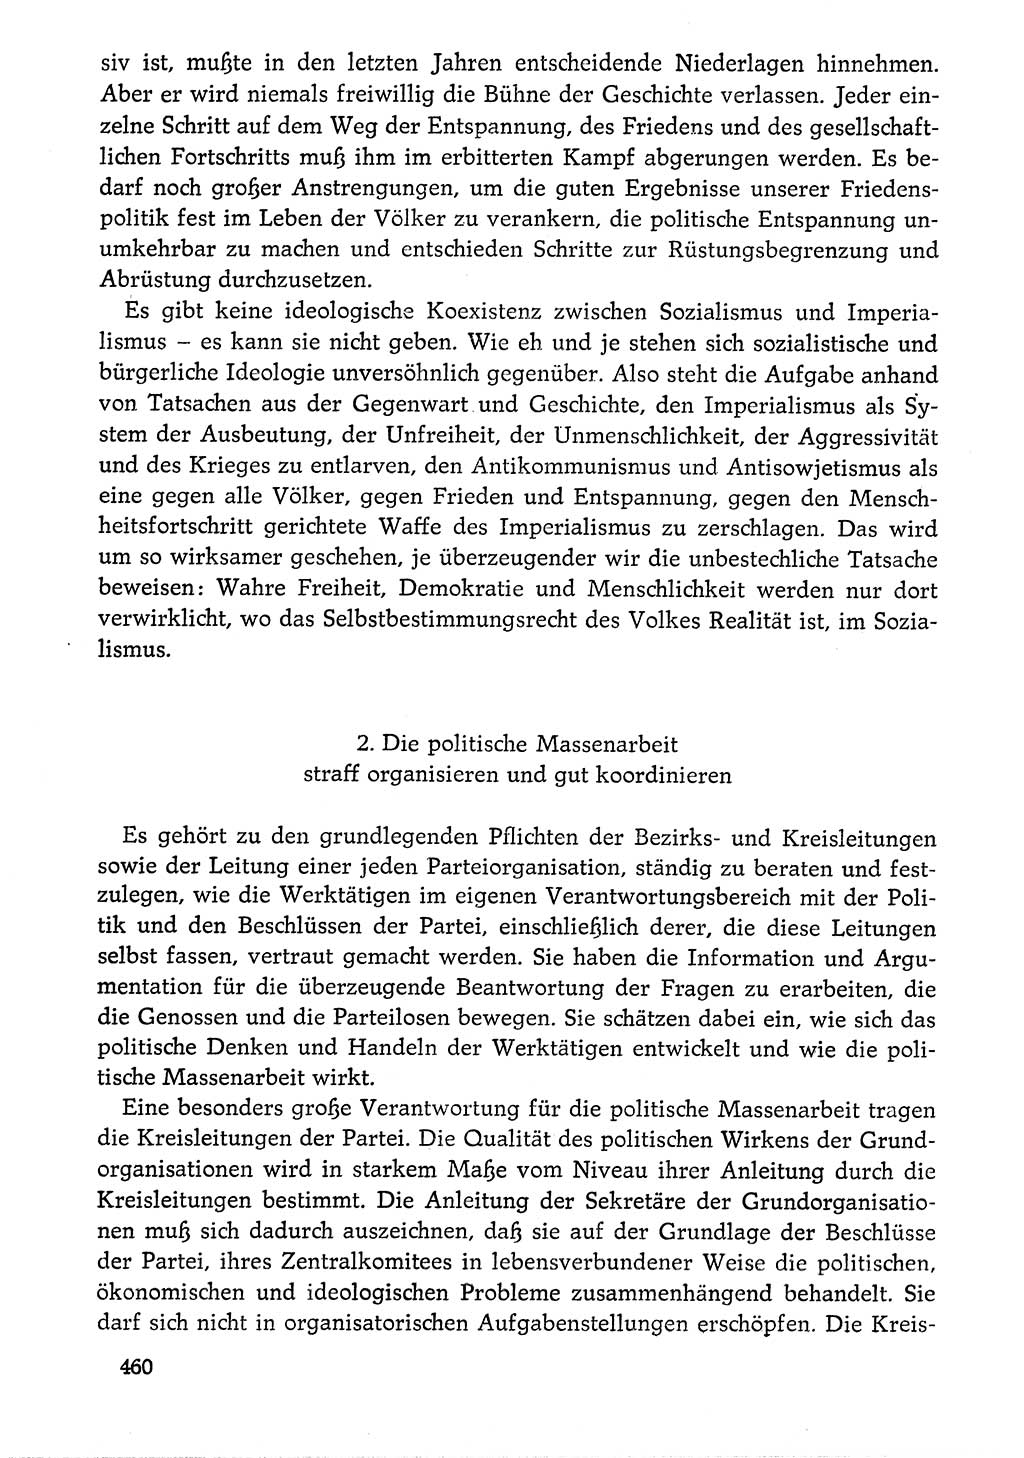 Dokumente der Sozialistischen Einheitspartei Deutschlands (SED) [Deutsche Demokratische Republik (DDR)] 1976-1977, Seite 460 (Dok. SED DDR 1976-1977, S. 460)